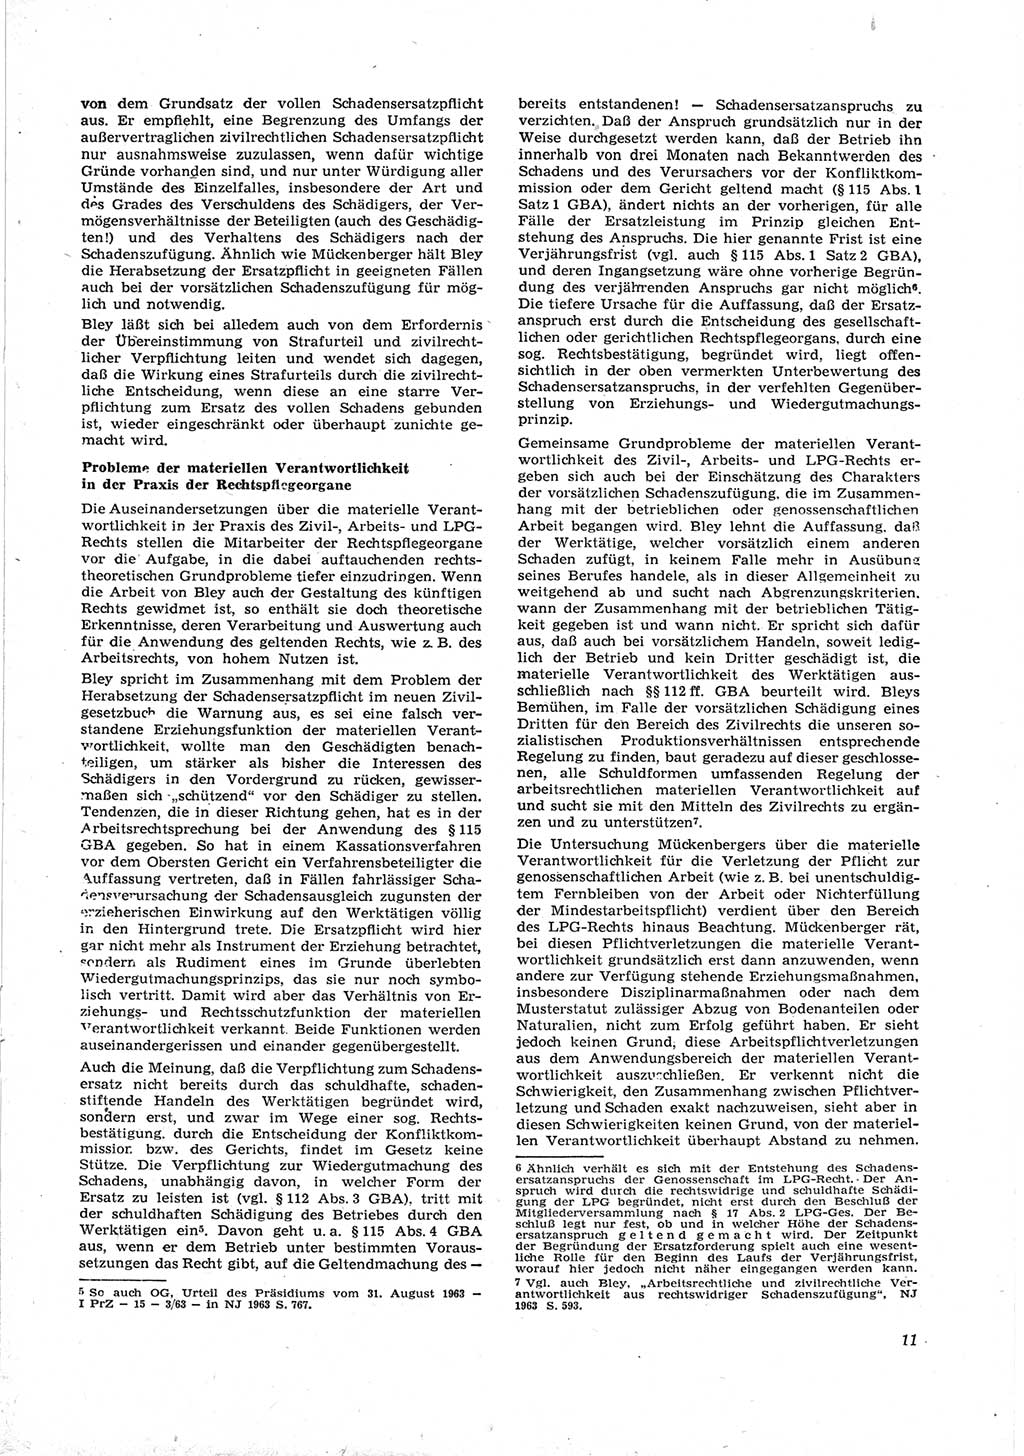 Neue Justiz (NJ), Zeitschrift für Recht und Rechtswissenschaft [Deutsche Demokratische Republik (DDR)], 18. Jahrgang 1964, Seite 11 (NJ DDR 1964, S. 11)